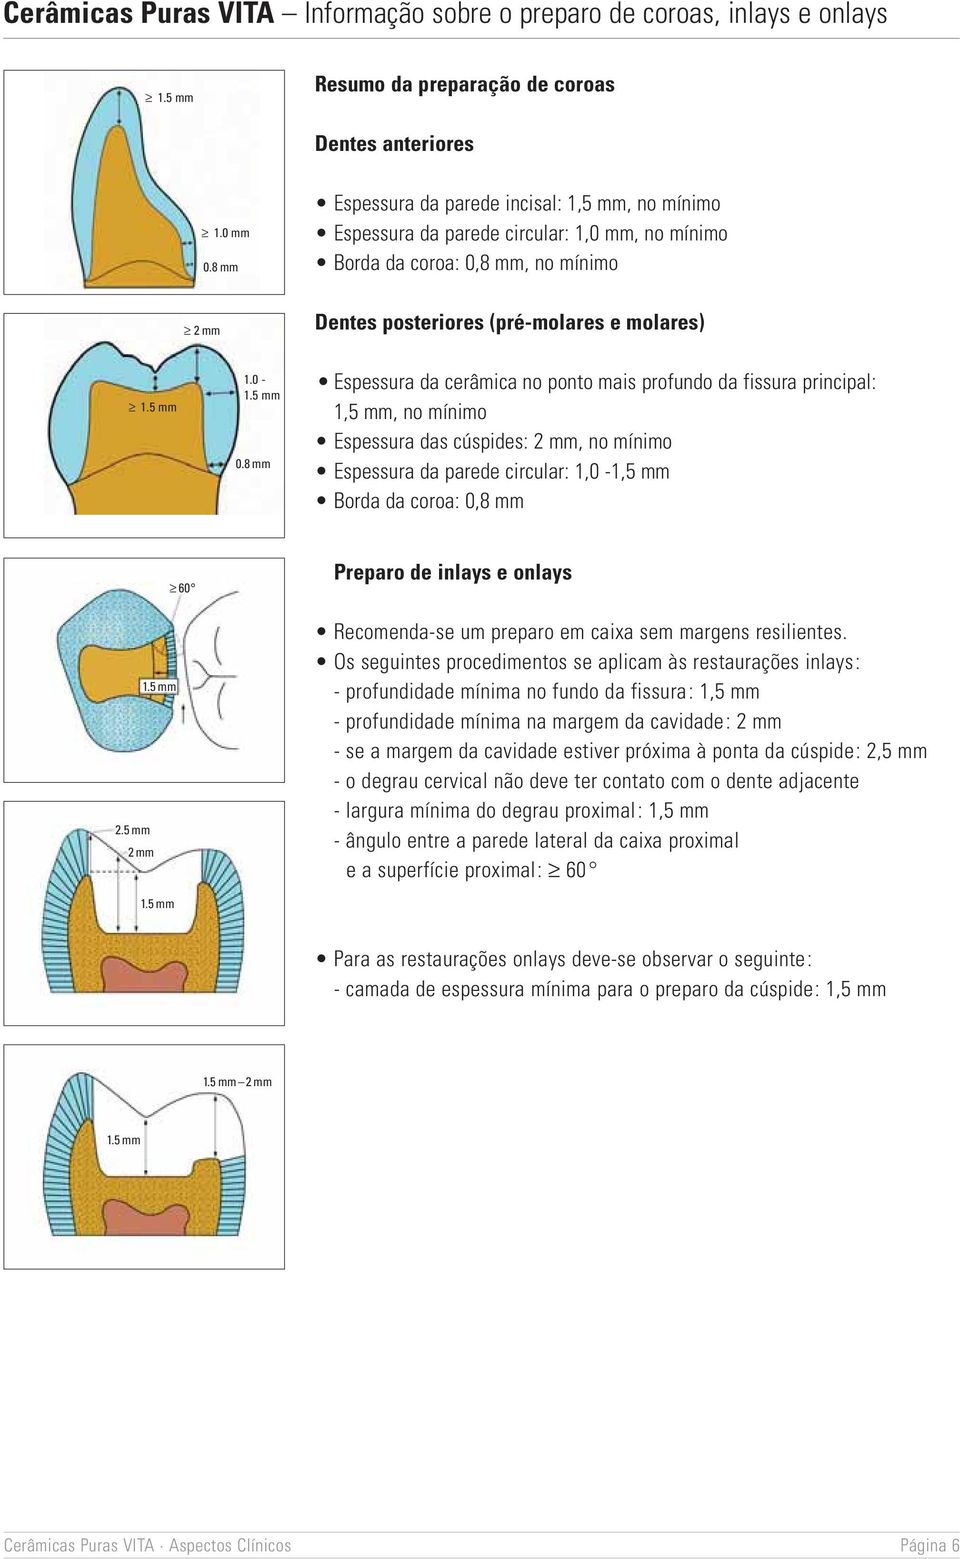 8 mm Dentes posteriores (pré-molares e molares) Espessura da cerâmica no ponto mais profundo da fissura principal: 1,5 mm, no mínimo Espessura das cúspides: 2 mm, no mínimo Espessura da parede